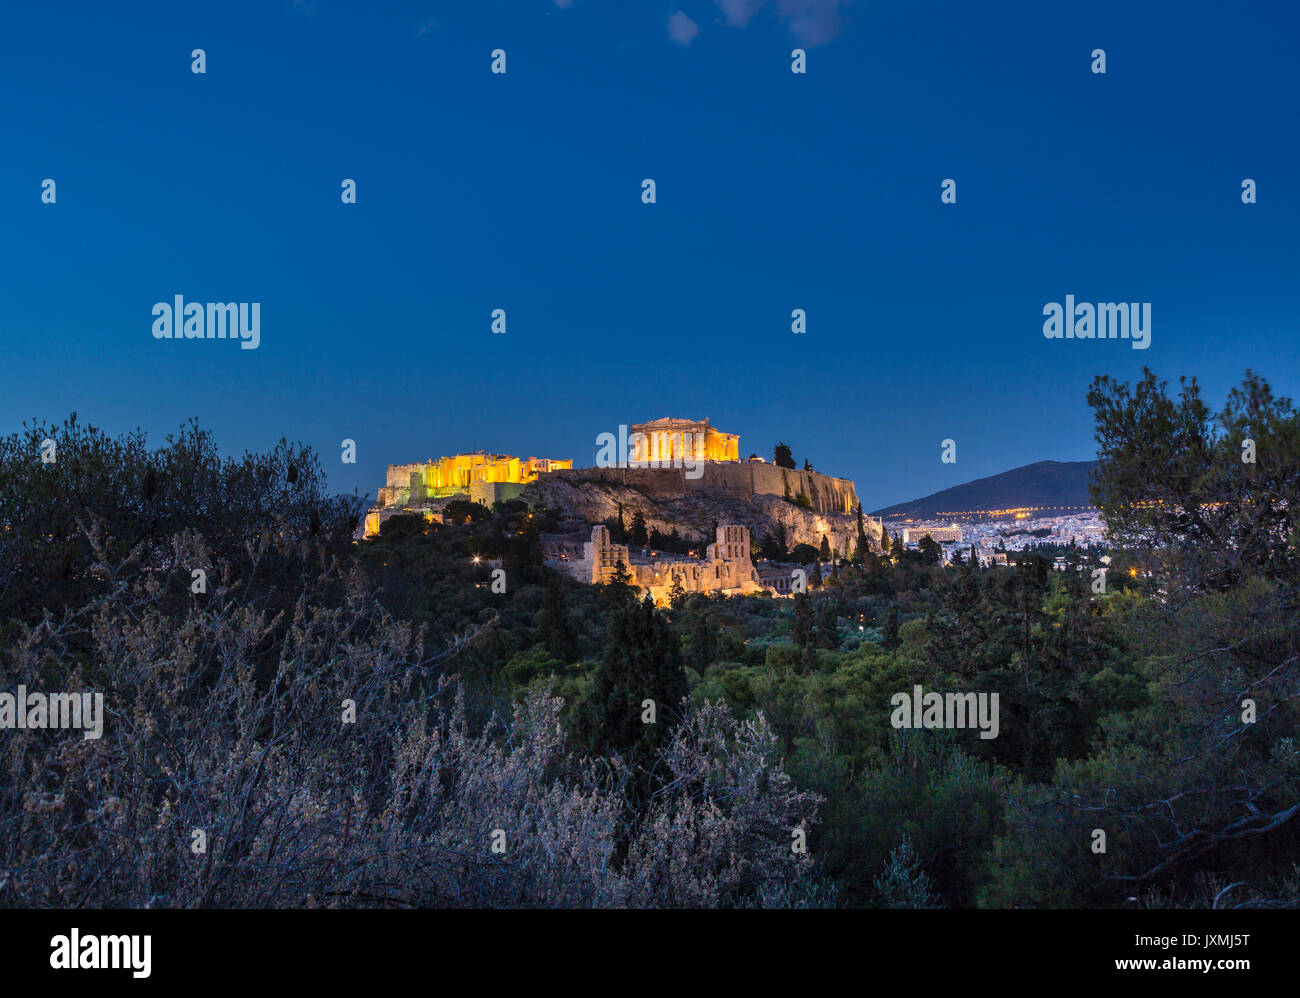 The Acropolis illuminated at night, Athens, Attiki, Greece, Europe Stock Photo